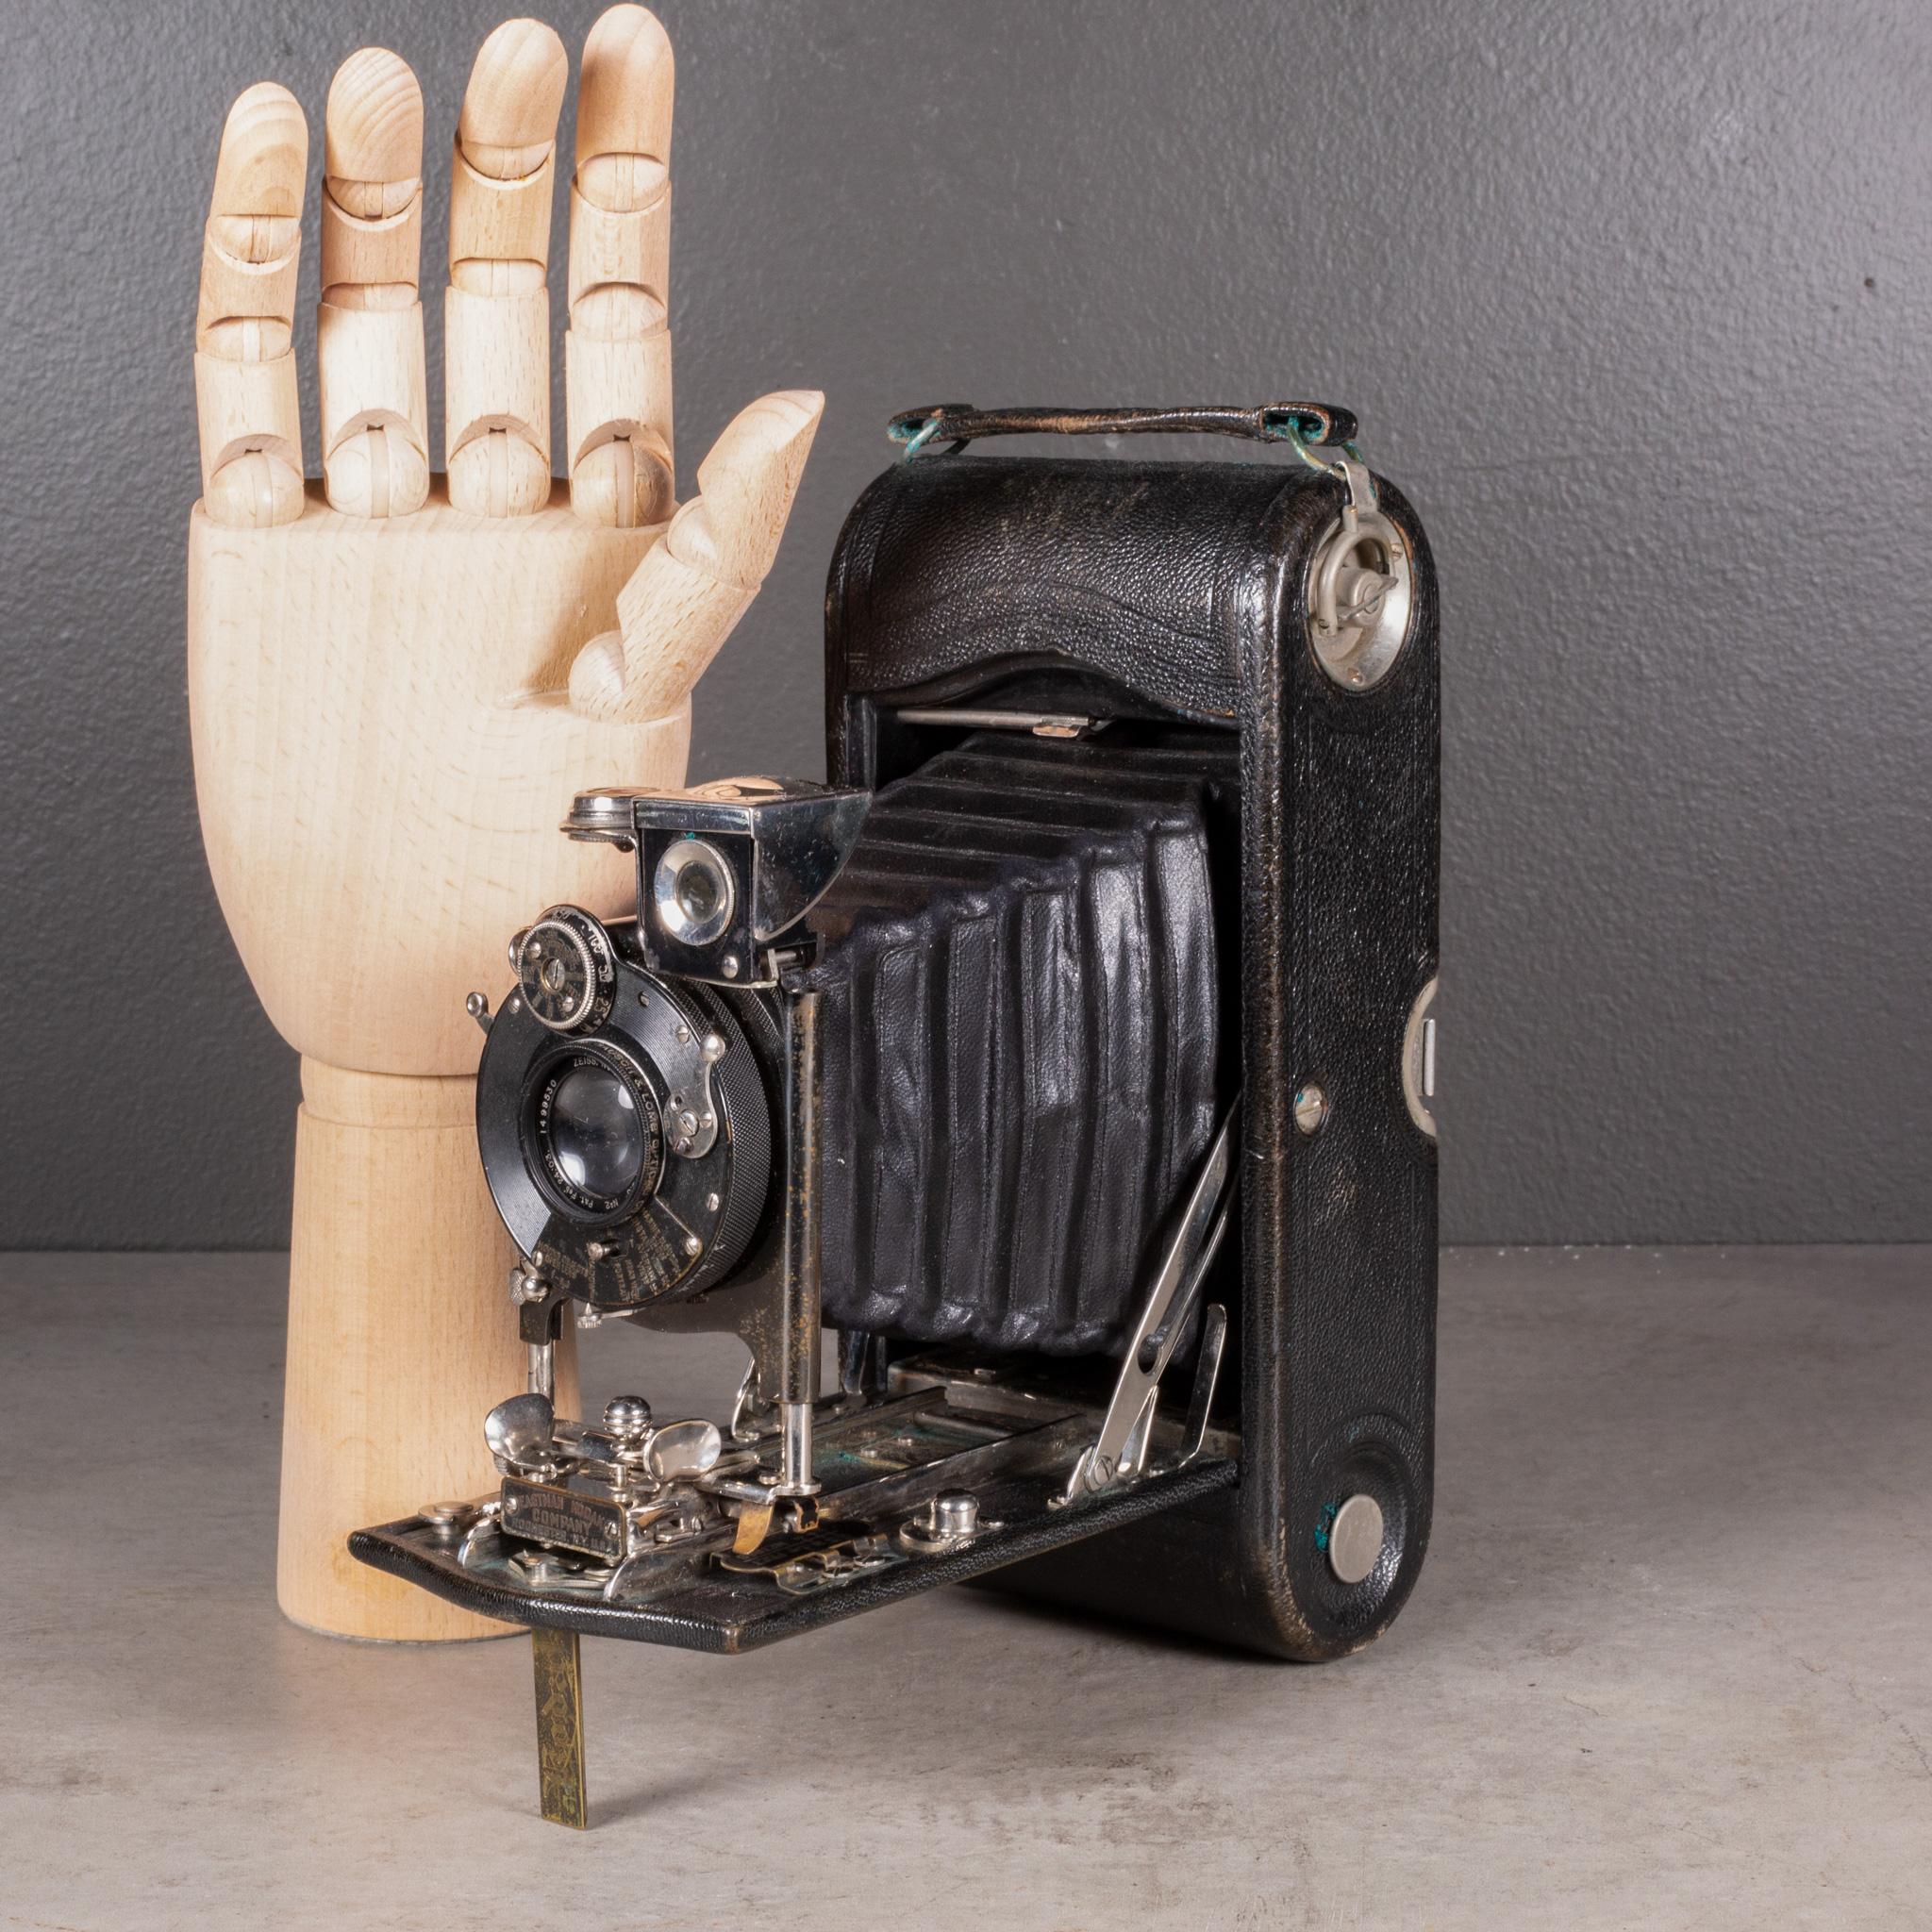 À PROPOS DE  

Un grand appareil photo pliant Eastman Kodak Anastigmat No.2 enveloppé de cuir avec des accents de chrome et de laiton. Étui en cuir d'origine avec serrure en laiton. Se plie en douceur jusqu'à 2,25 pouces. Cet appareil a conservé sa